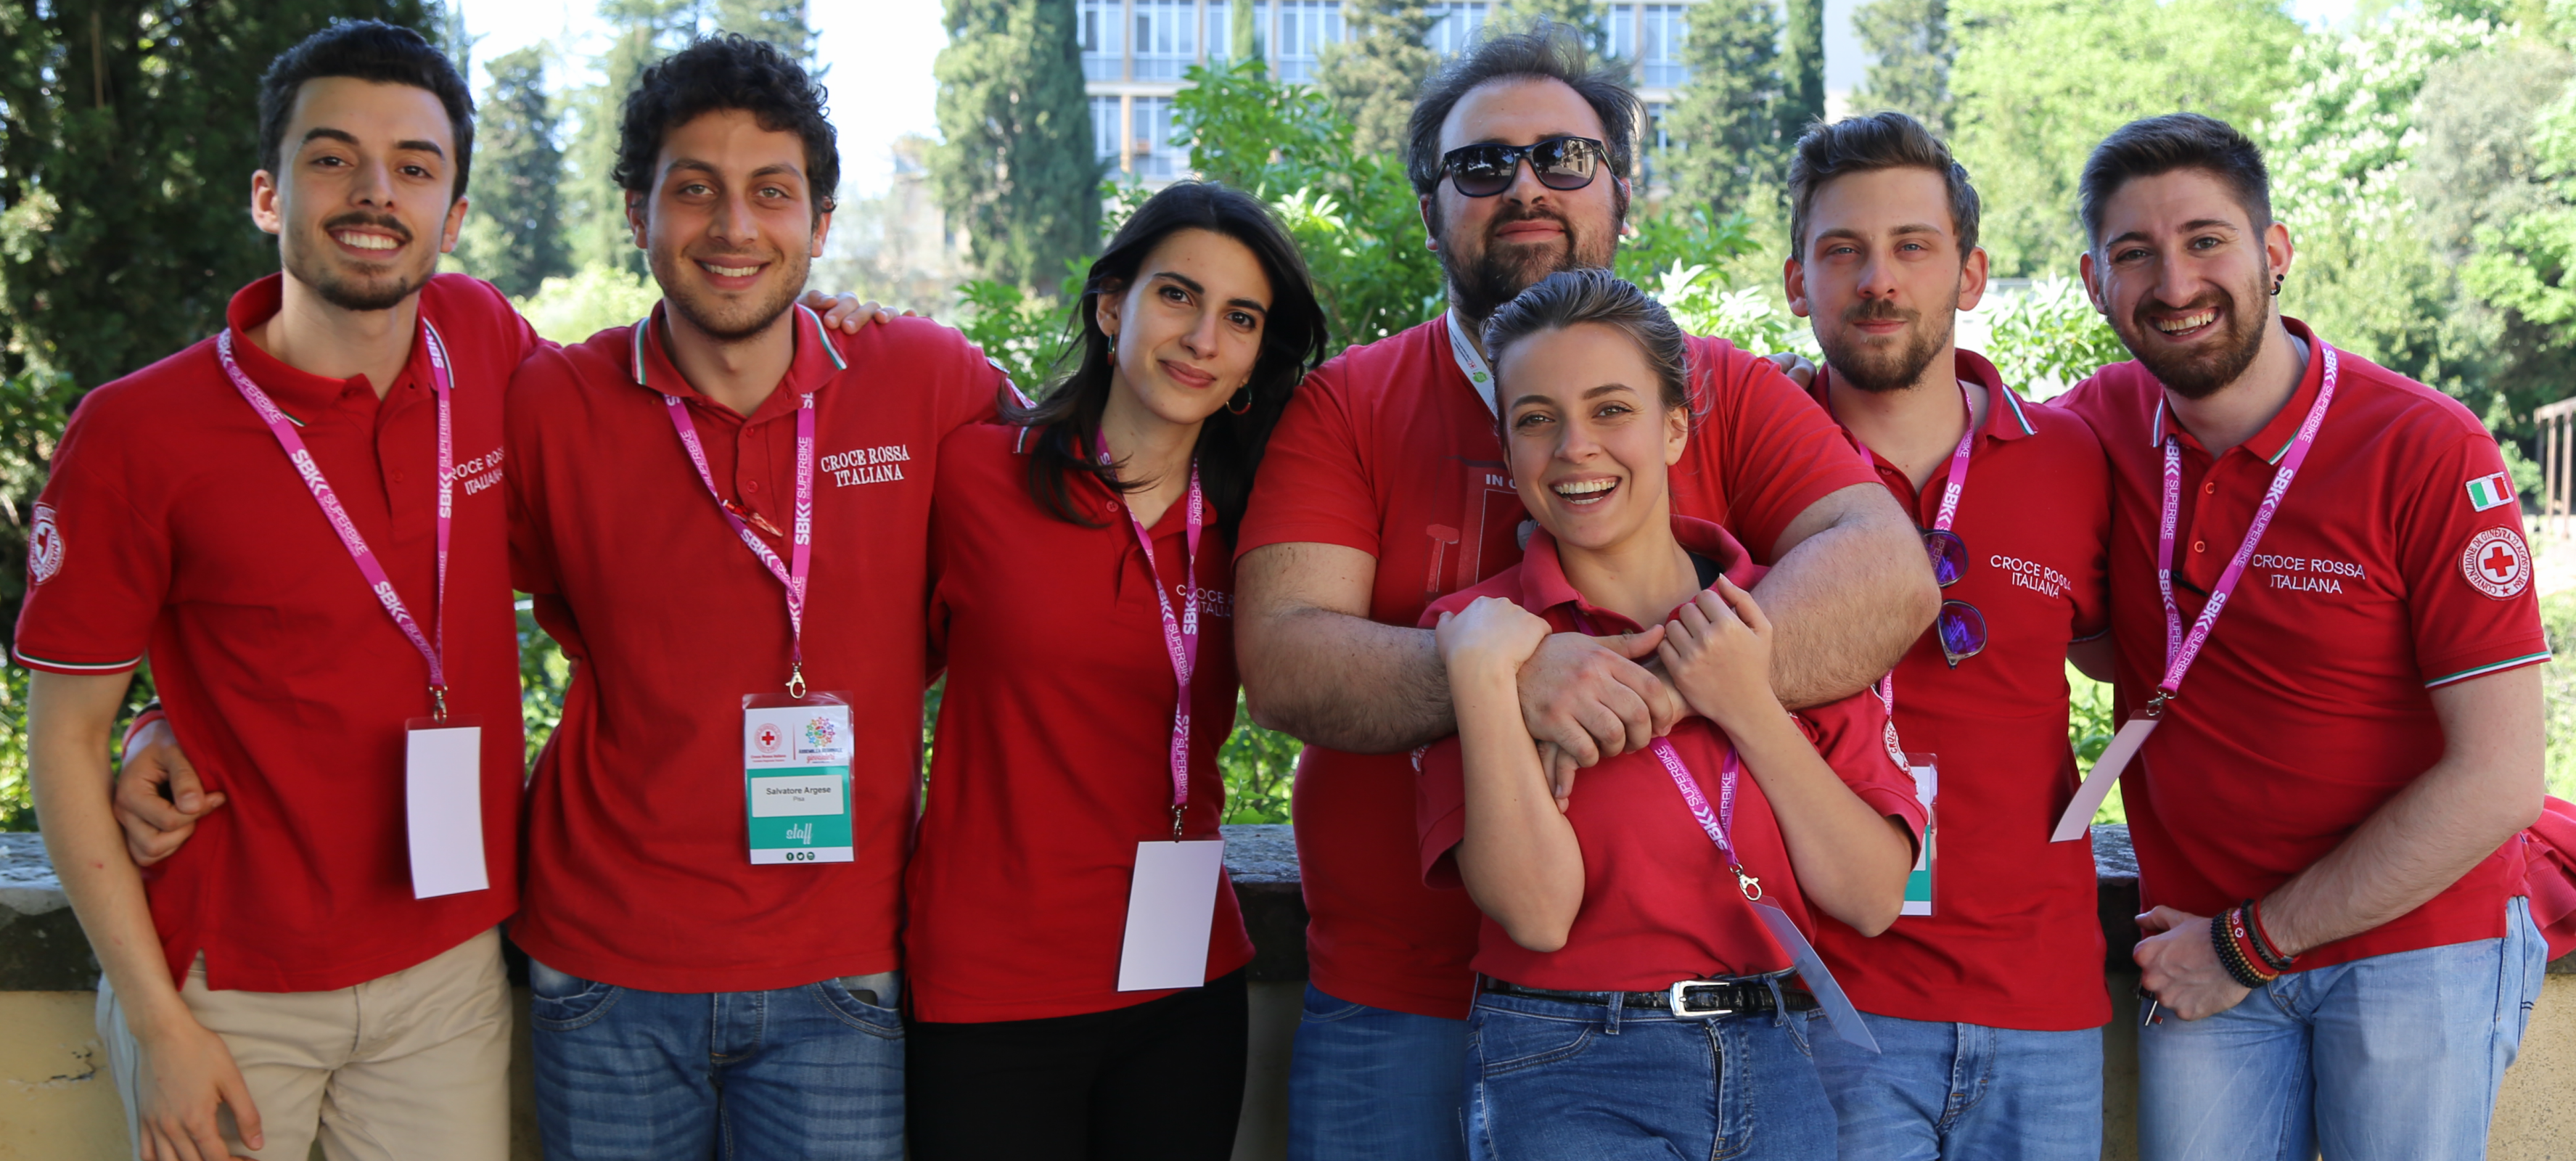 Squadra regionale dei Giovani della Croce Rossa Italiana – Toscana